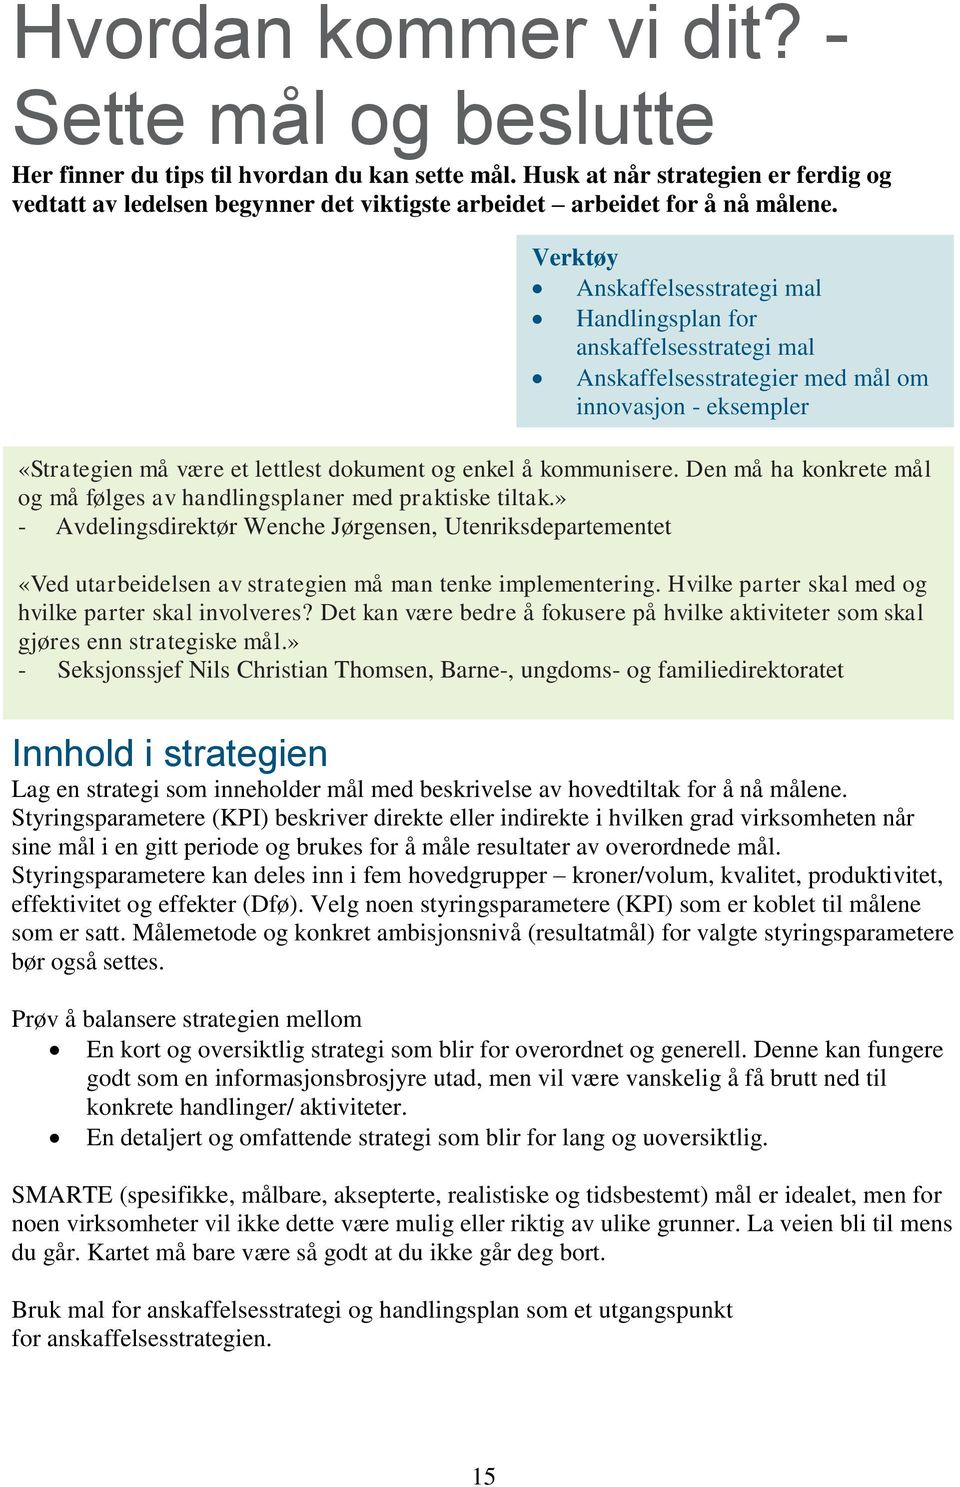 Verktøy Anskaffelsesstrategi mal Handlingsplan for anskaffelsesstrategi mal Anskaffelsesstrategier med mål om innovasjon - eksempler «Strategien må være et lettlest dokument og enkel å kommunisere.